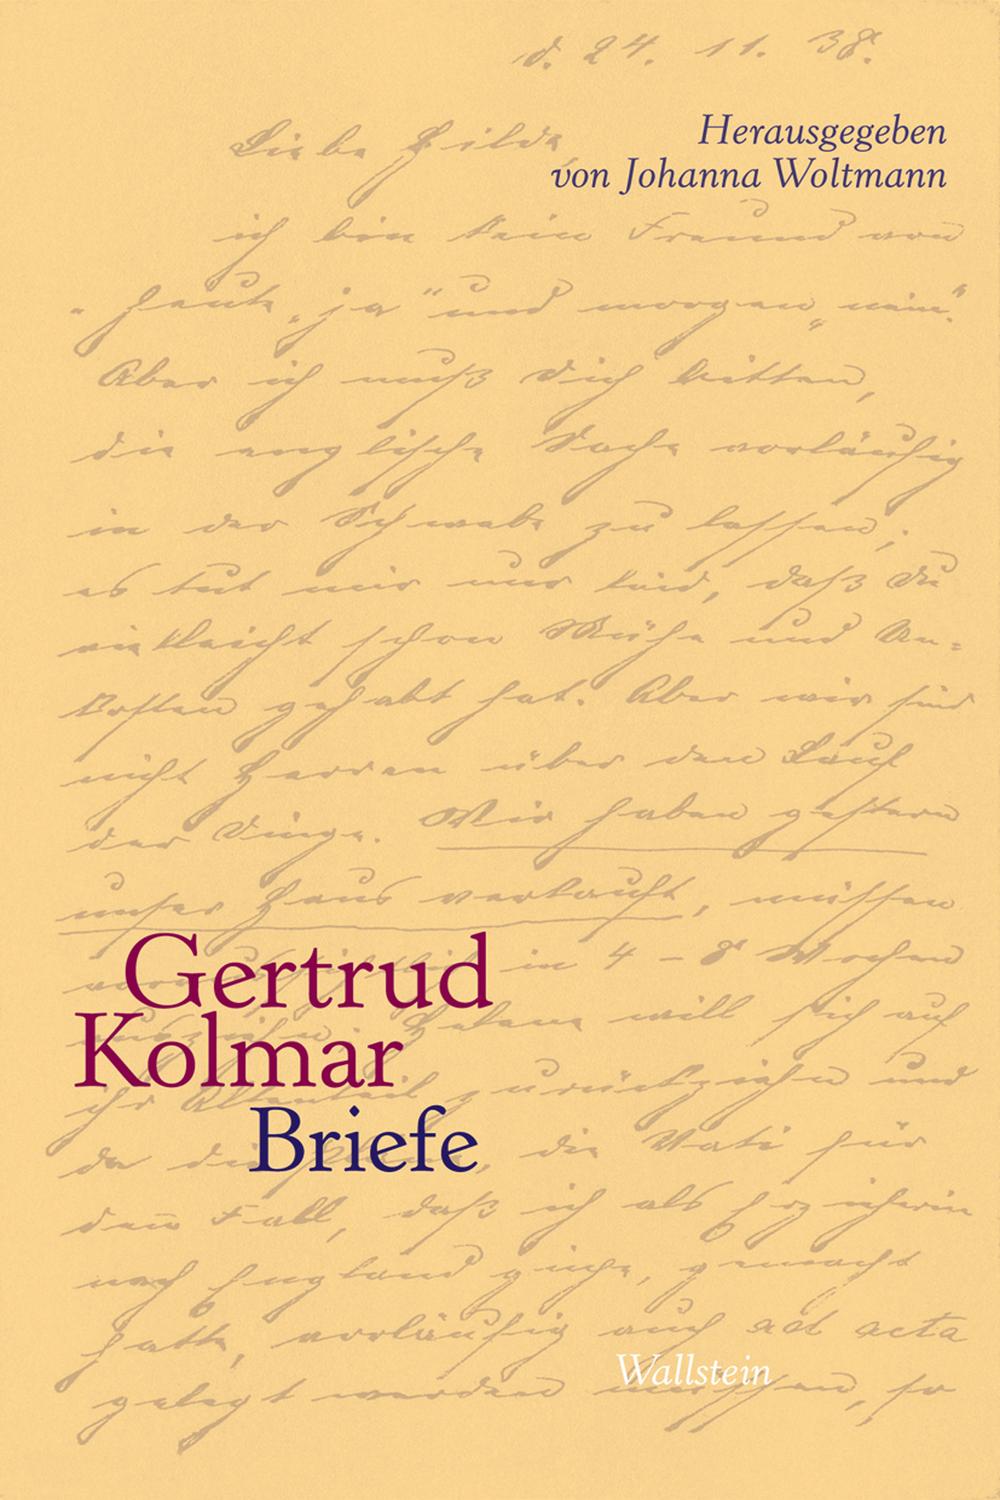 Briefe - Gertrud Kolmar,,Johanna Woltmann